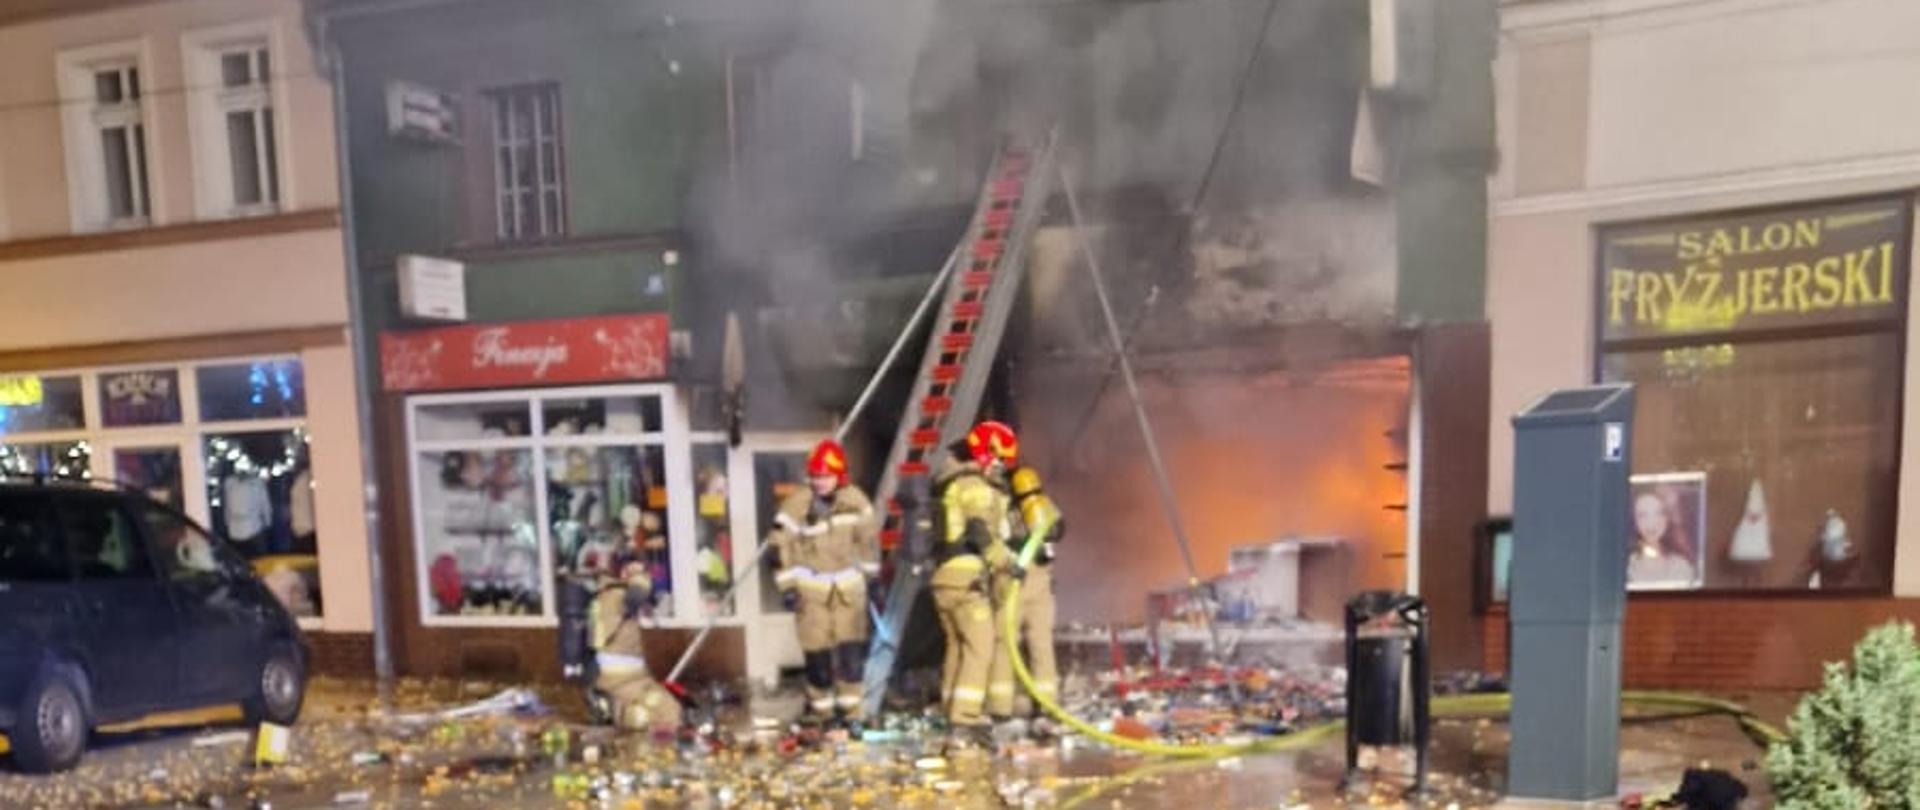 Cały lokal sklepu z alkoholem pali się, widać ogień. Strażacy prowadzą akcję gaśniczą.